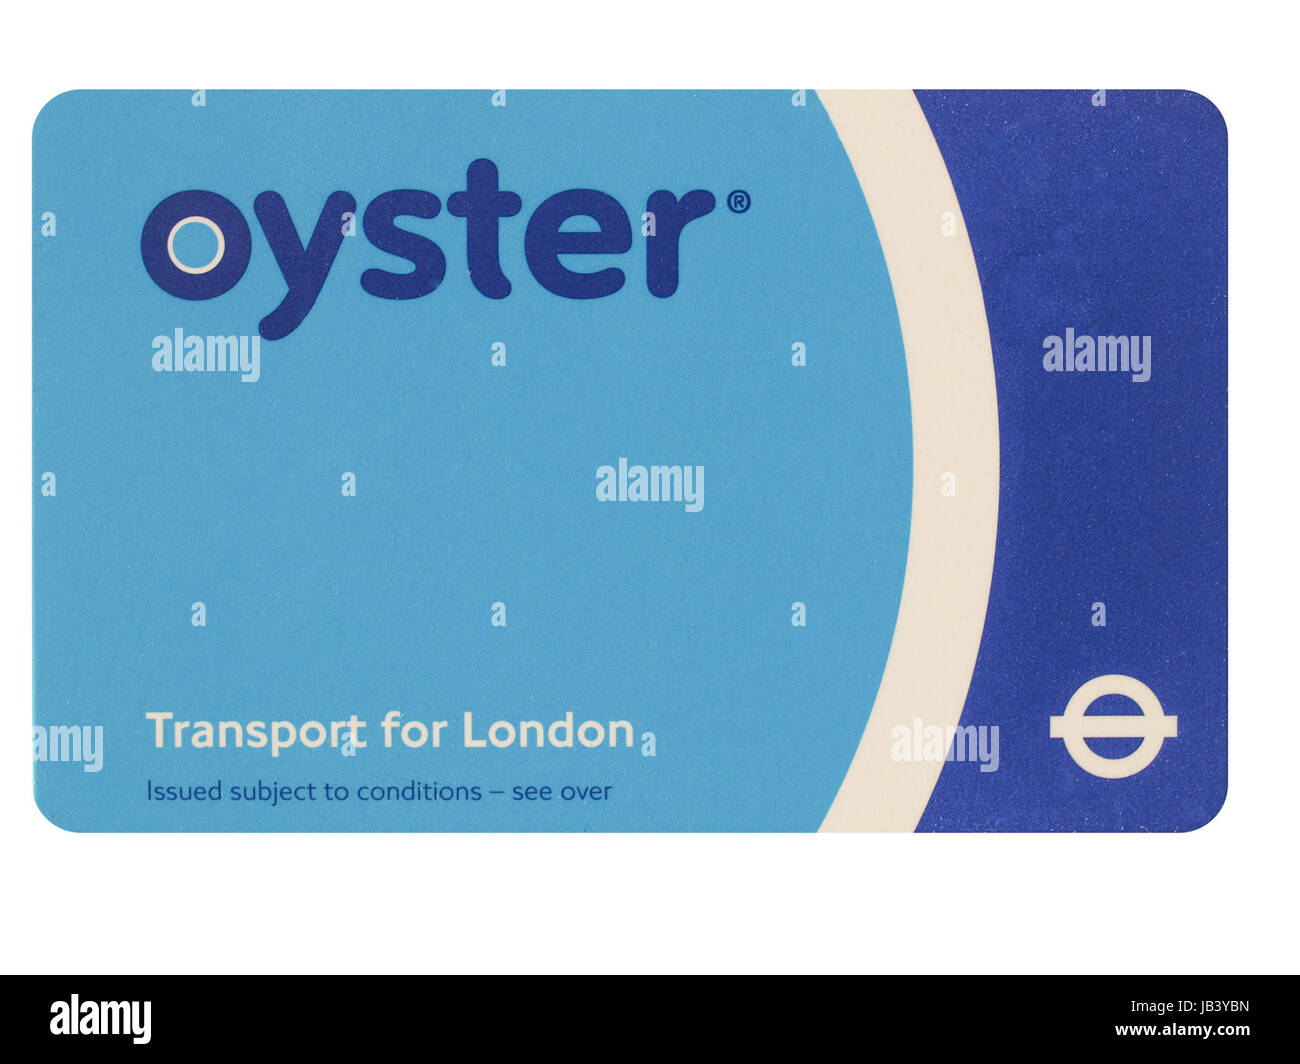 Die Oyster Card nutzt near Field Communication-Technologie für öffentliche Verkehrsmittel ticketing in und um London isoliert auf weißem Hintergrund Stockfoto